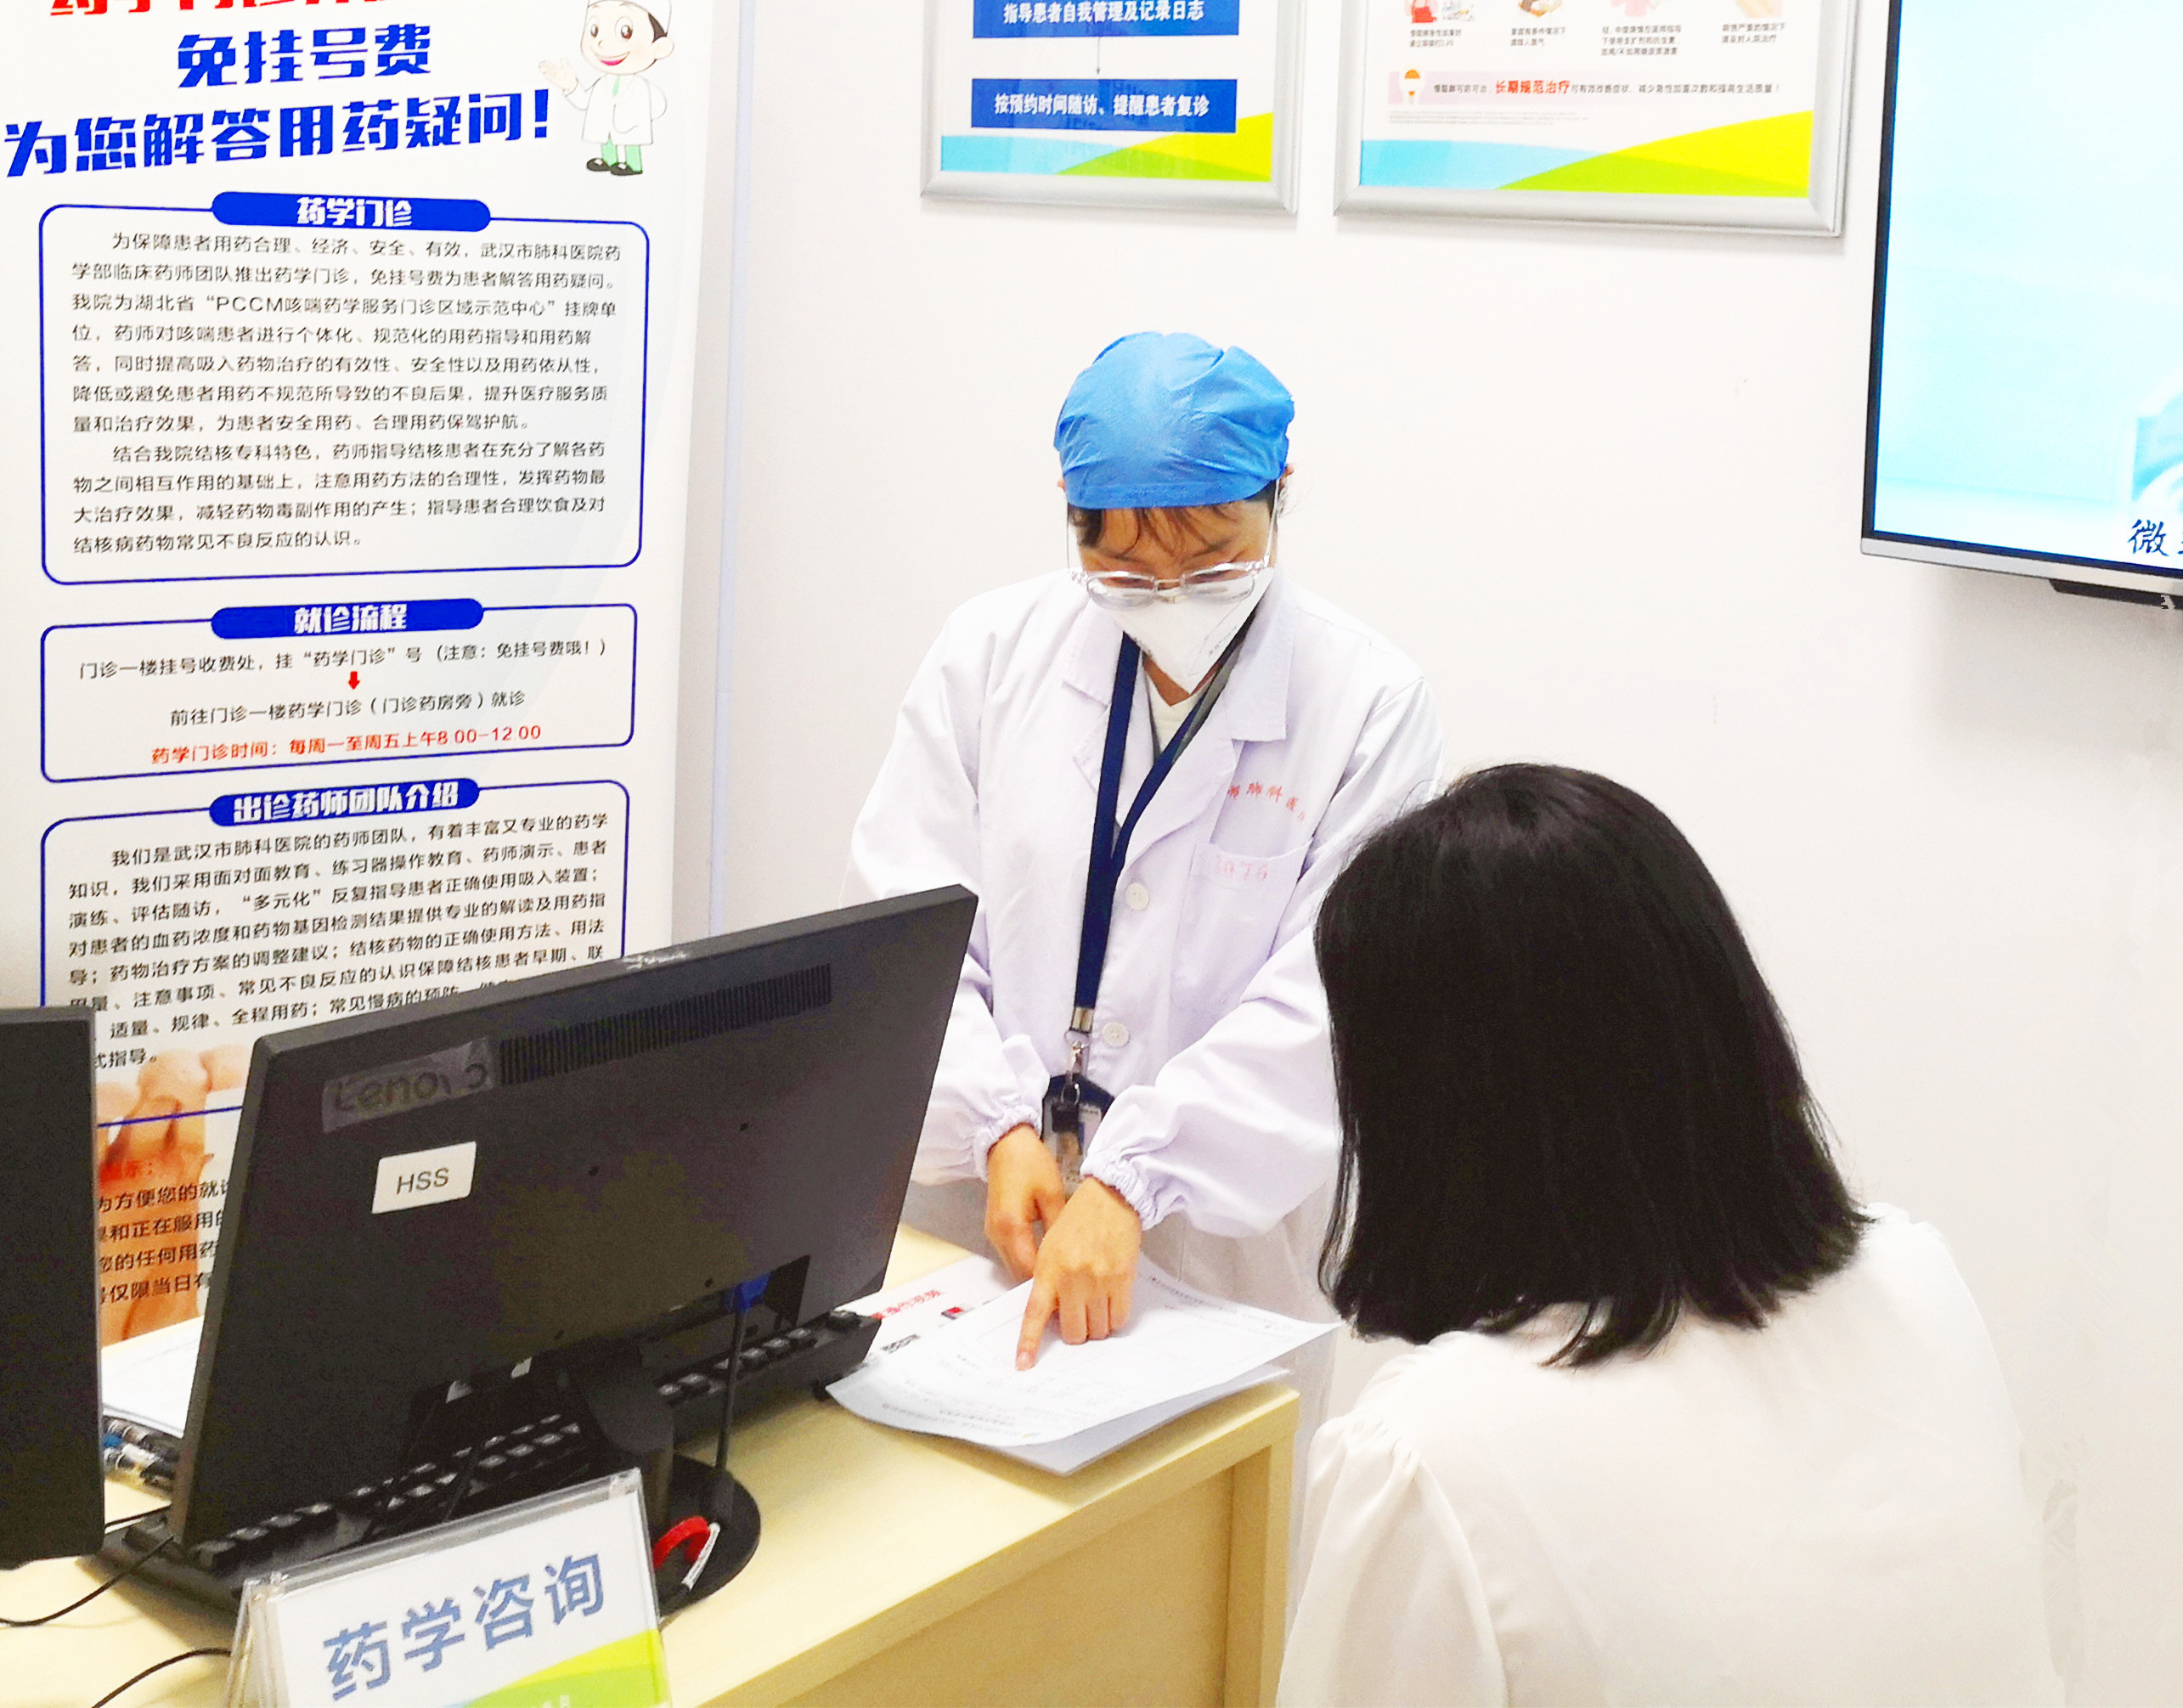 为确保患者合理精准用药  武汉市肺科医院用上药物基因检测技术